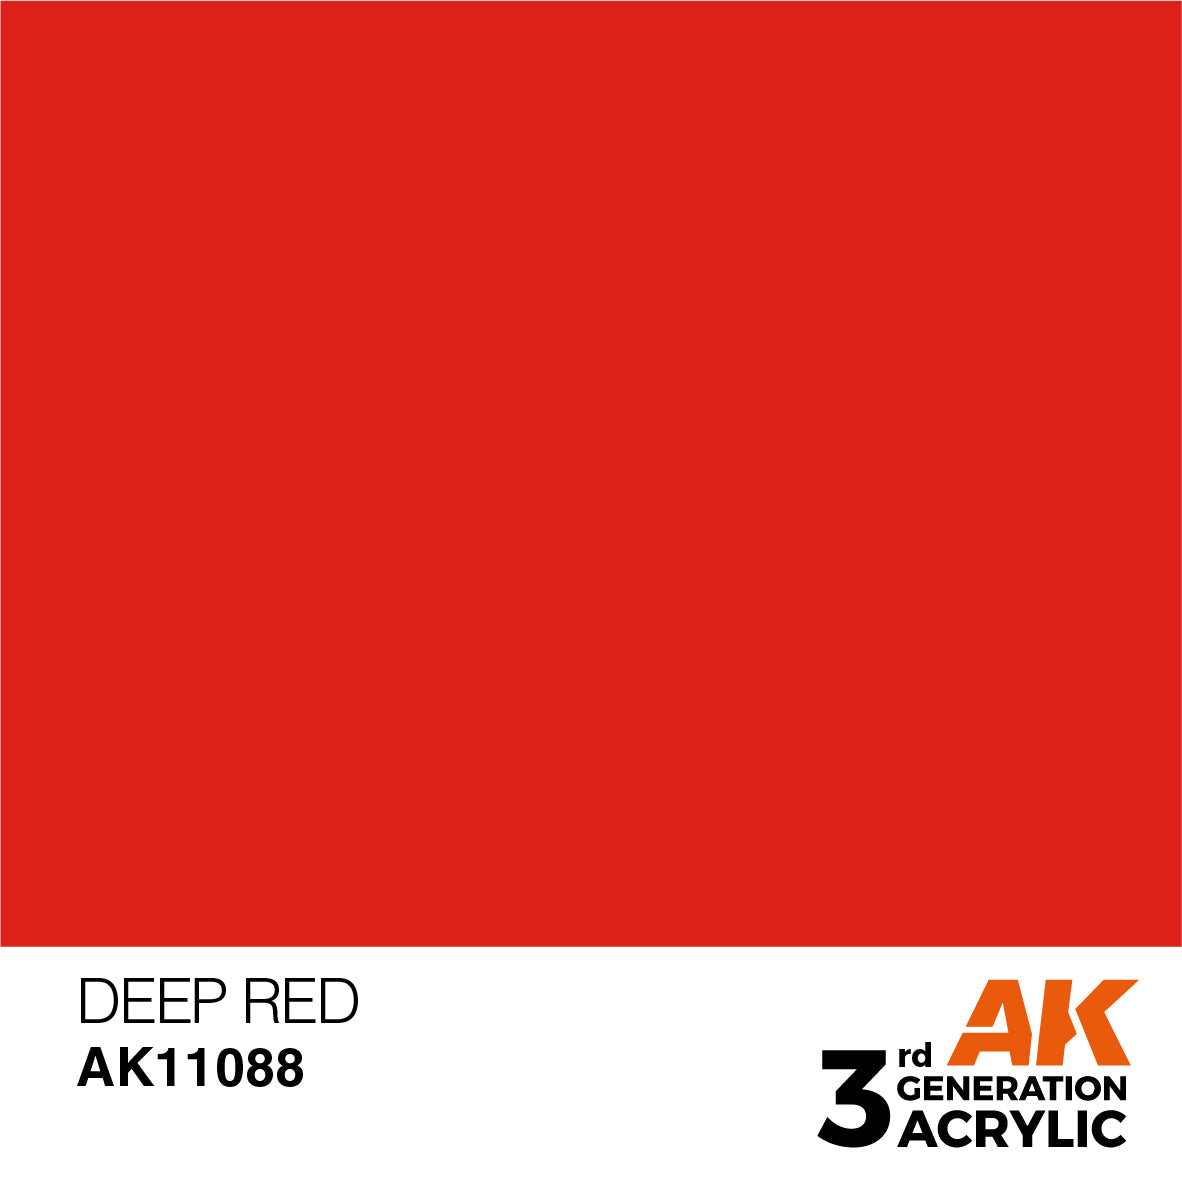 Deep Red – Intense